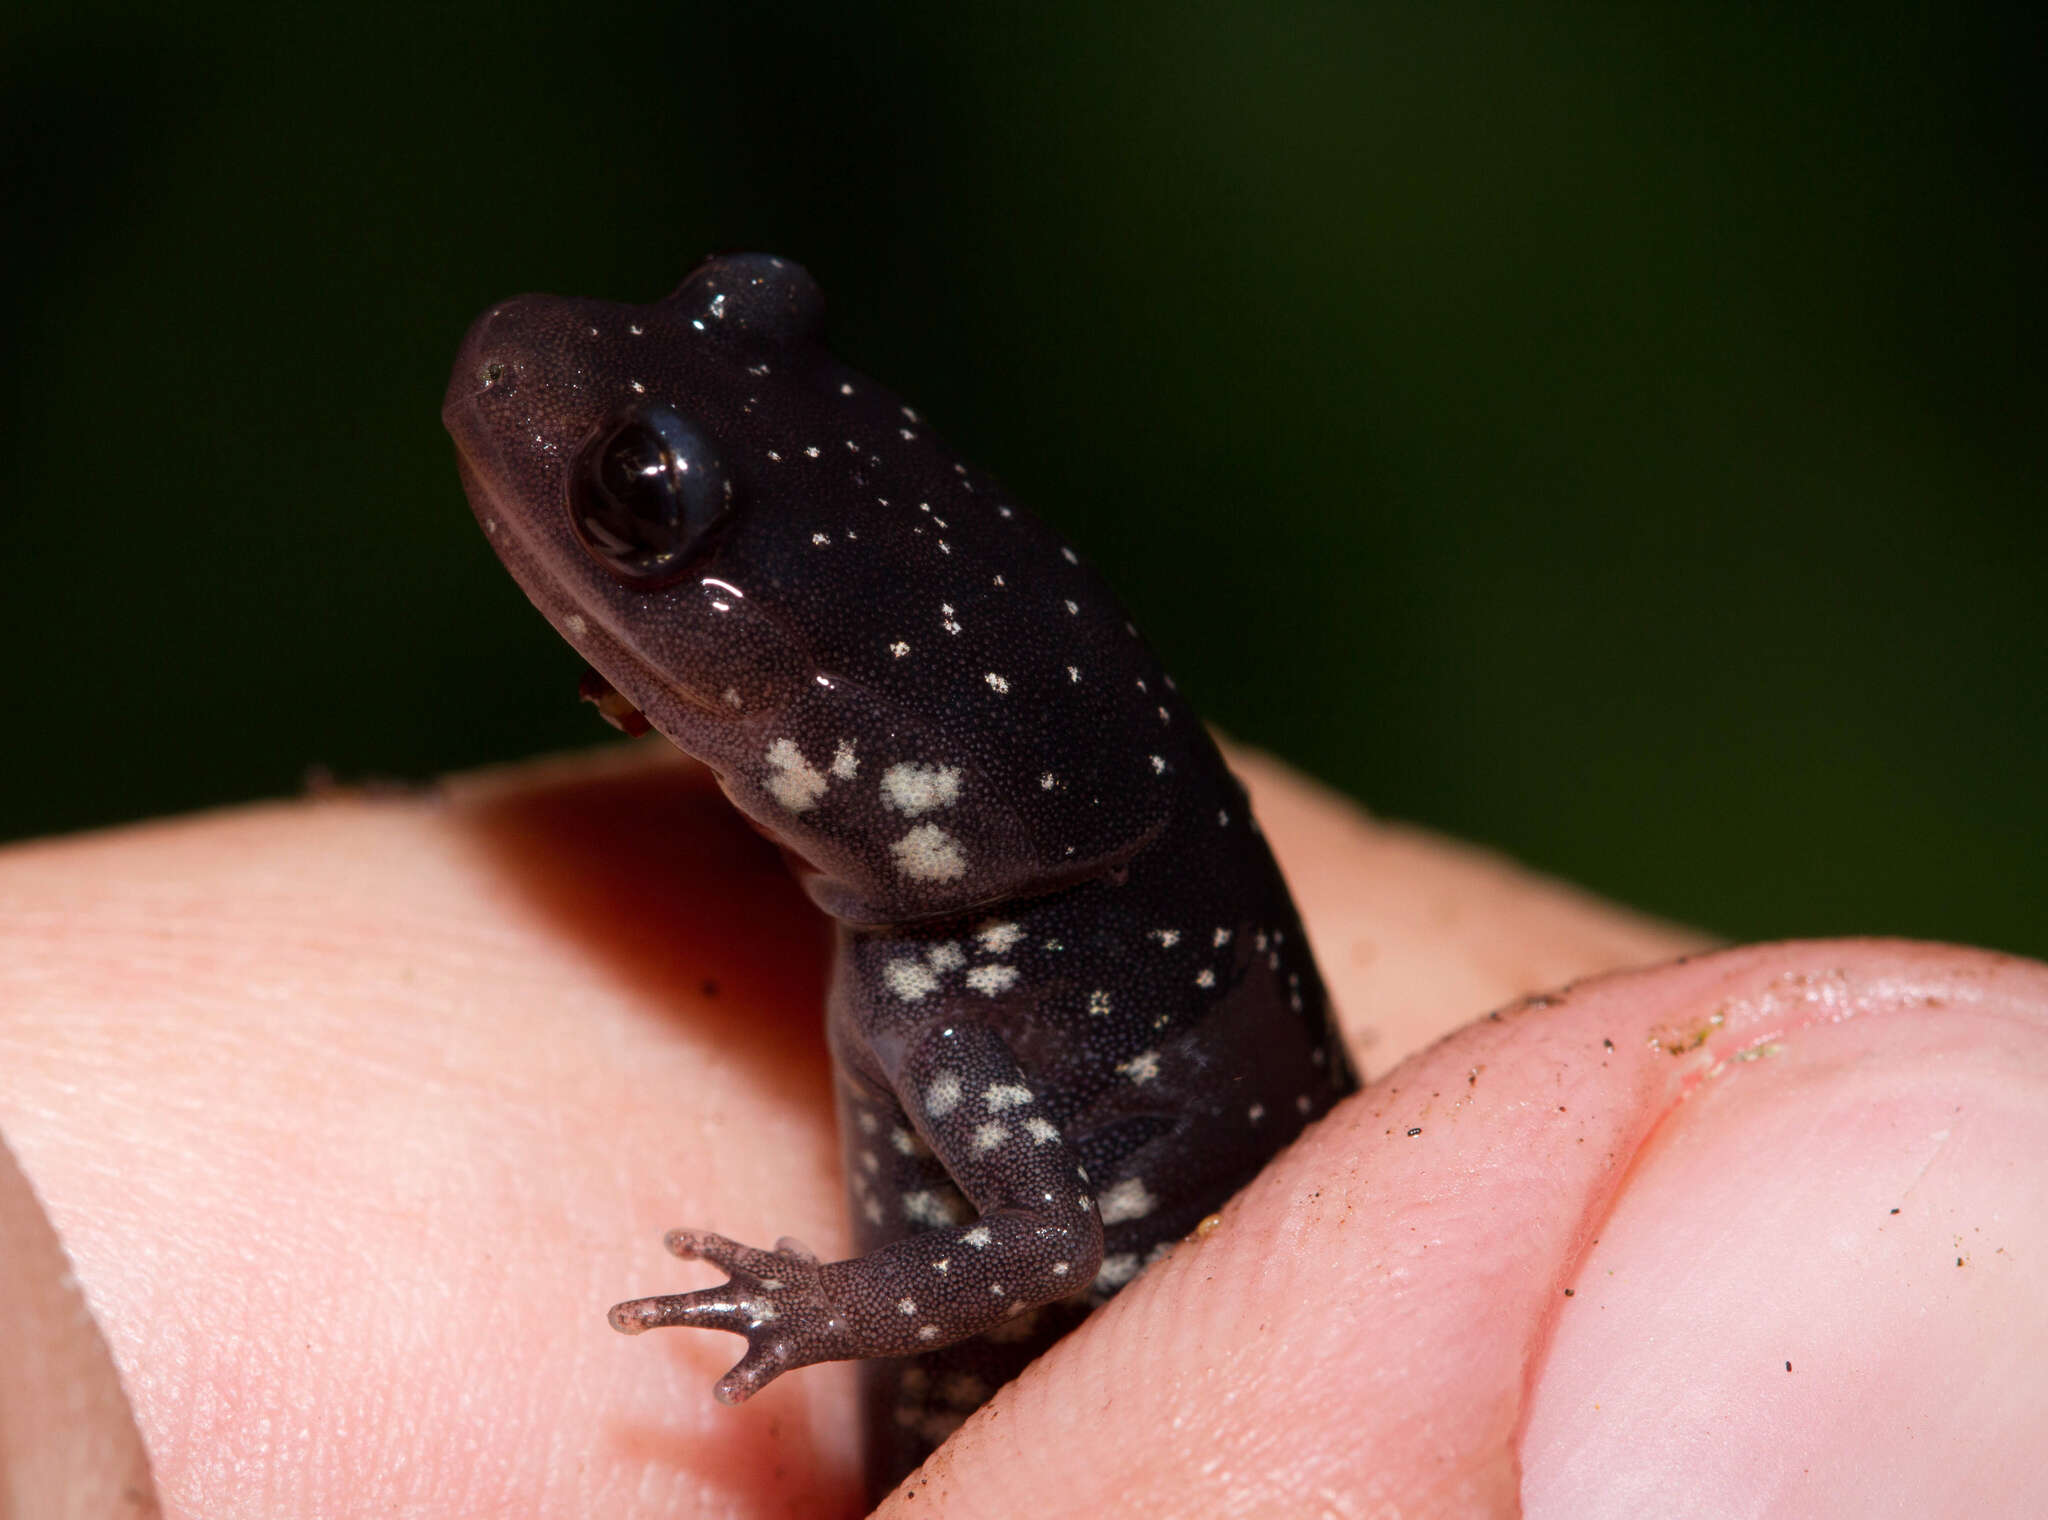 Image of Western Slimy Salamander